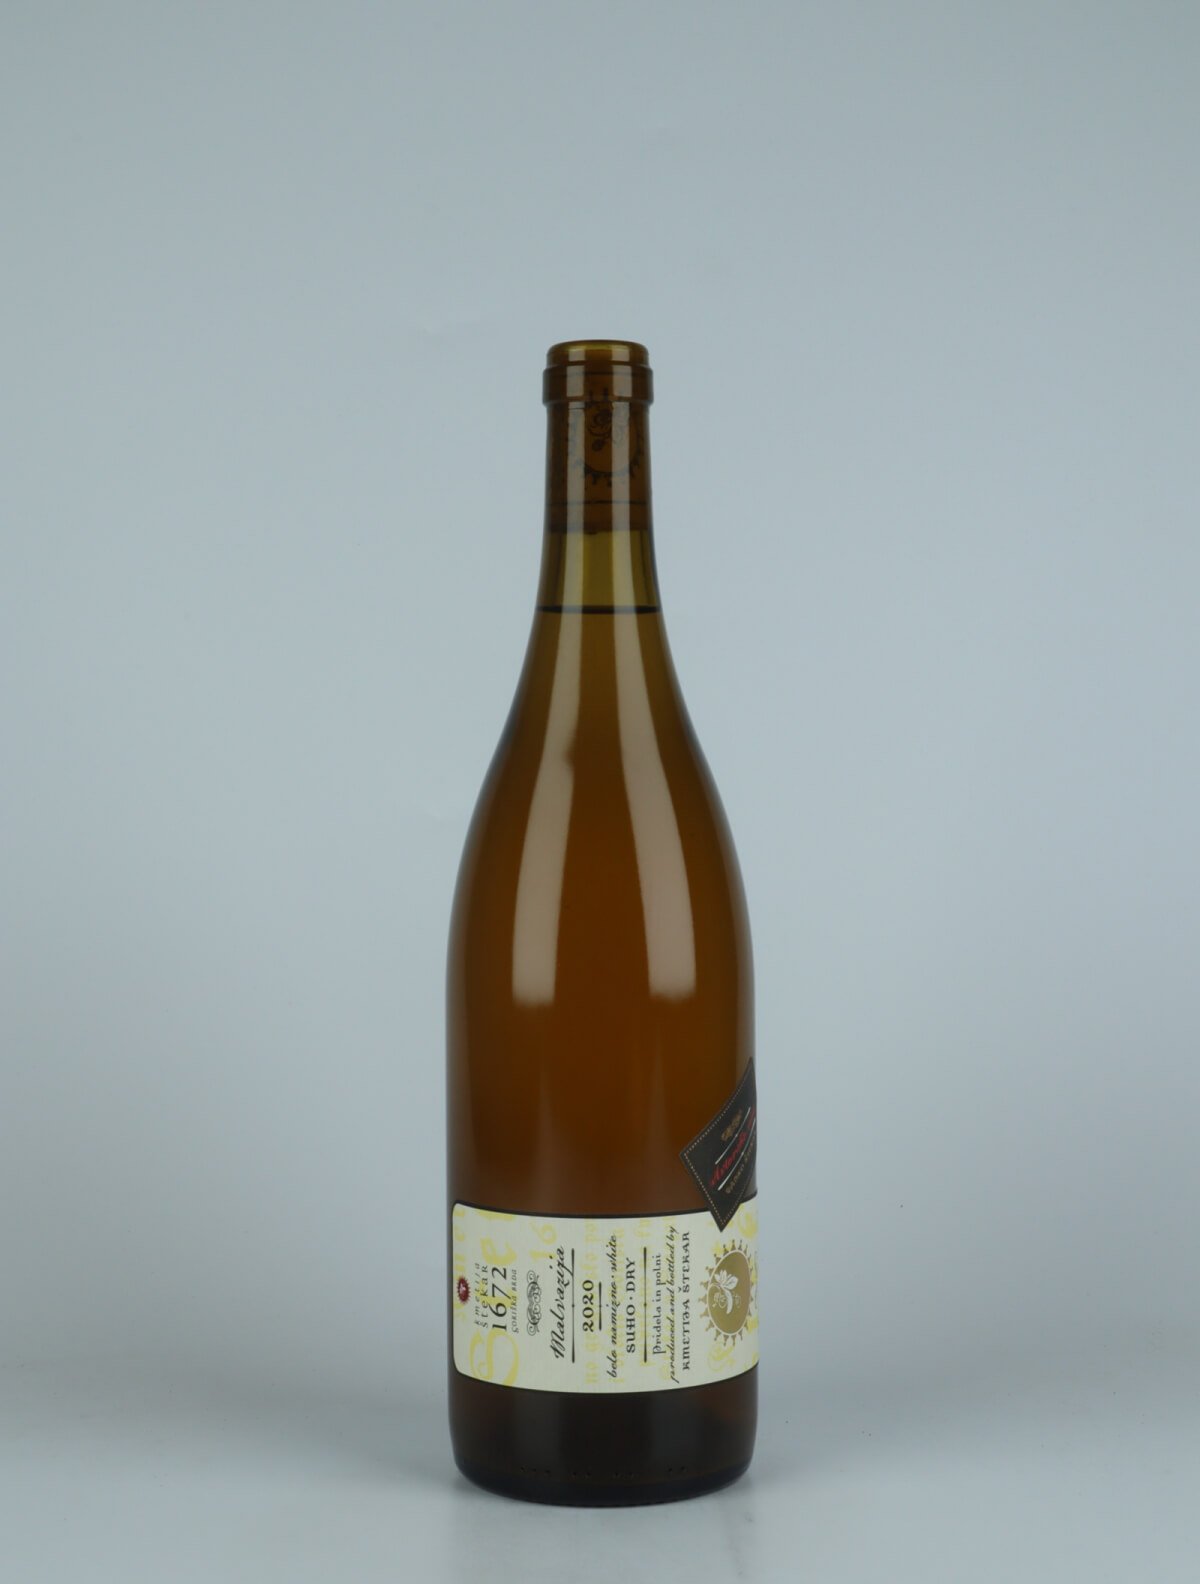 En flaske 2020 Malvazija Orange vin fra Kmetija Stekar, Brda i Slovenien